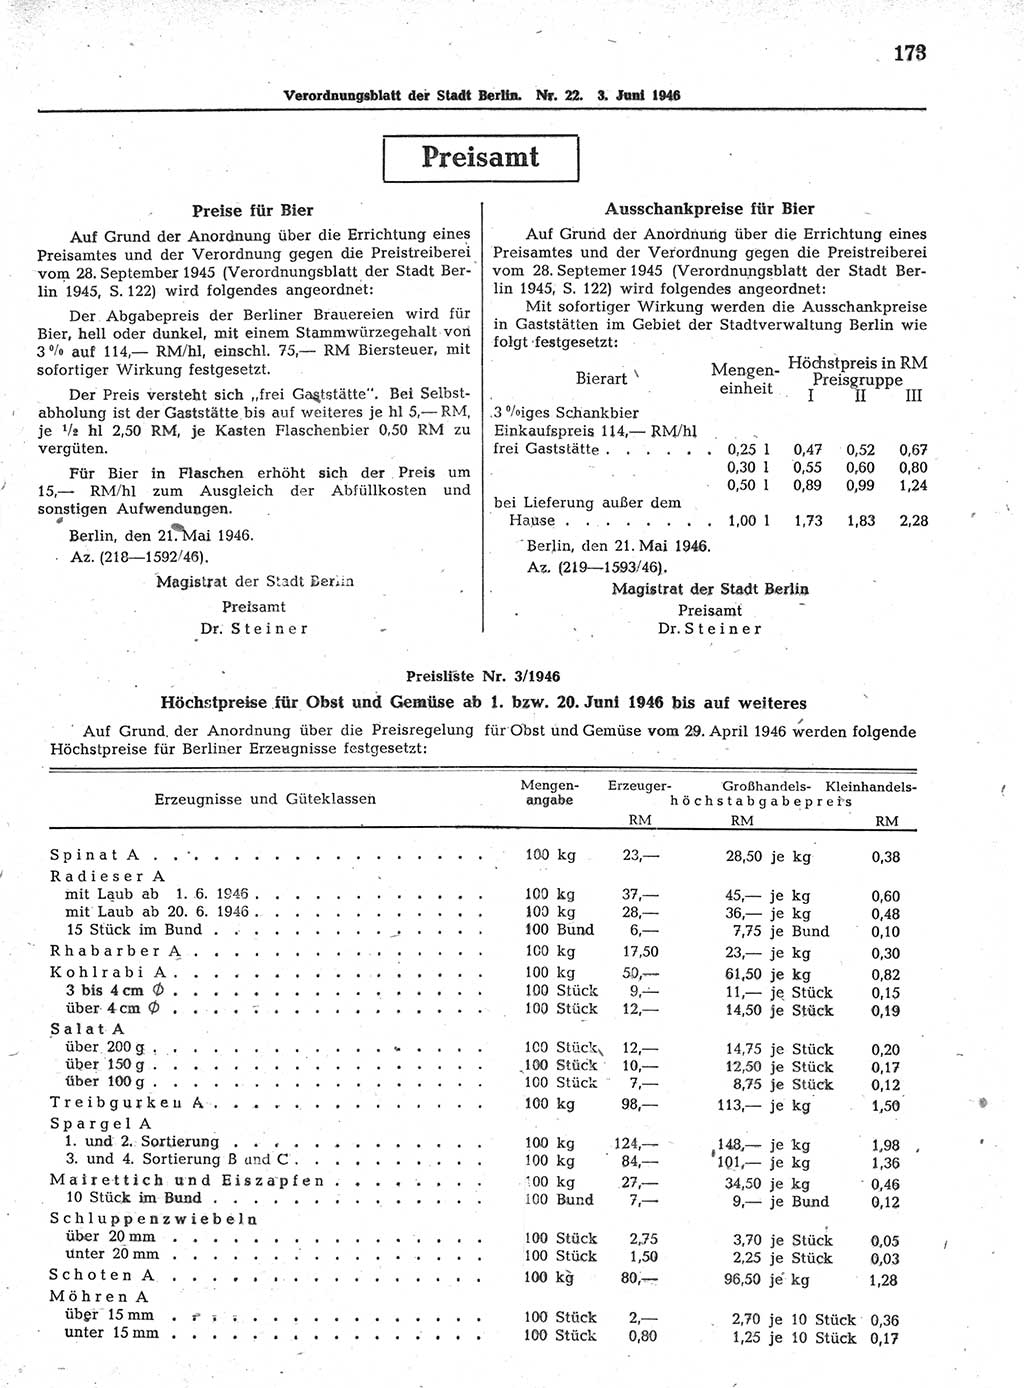 Verordnungsblatt (VOBl.) der Stadt Berlin, für Groß-Berlin 1946, Seite 173 (VOBl. Bln. 1946, S. 173)